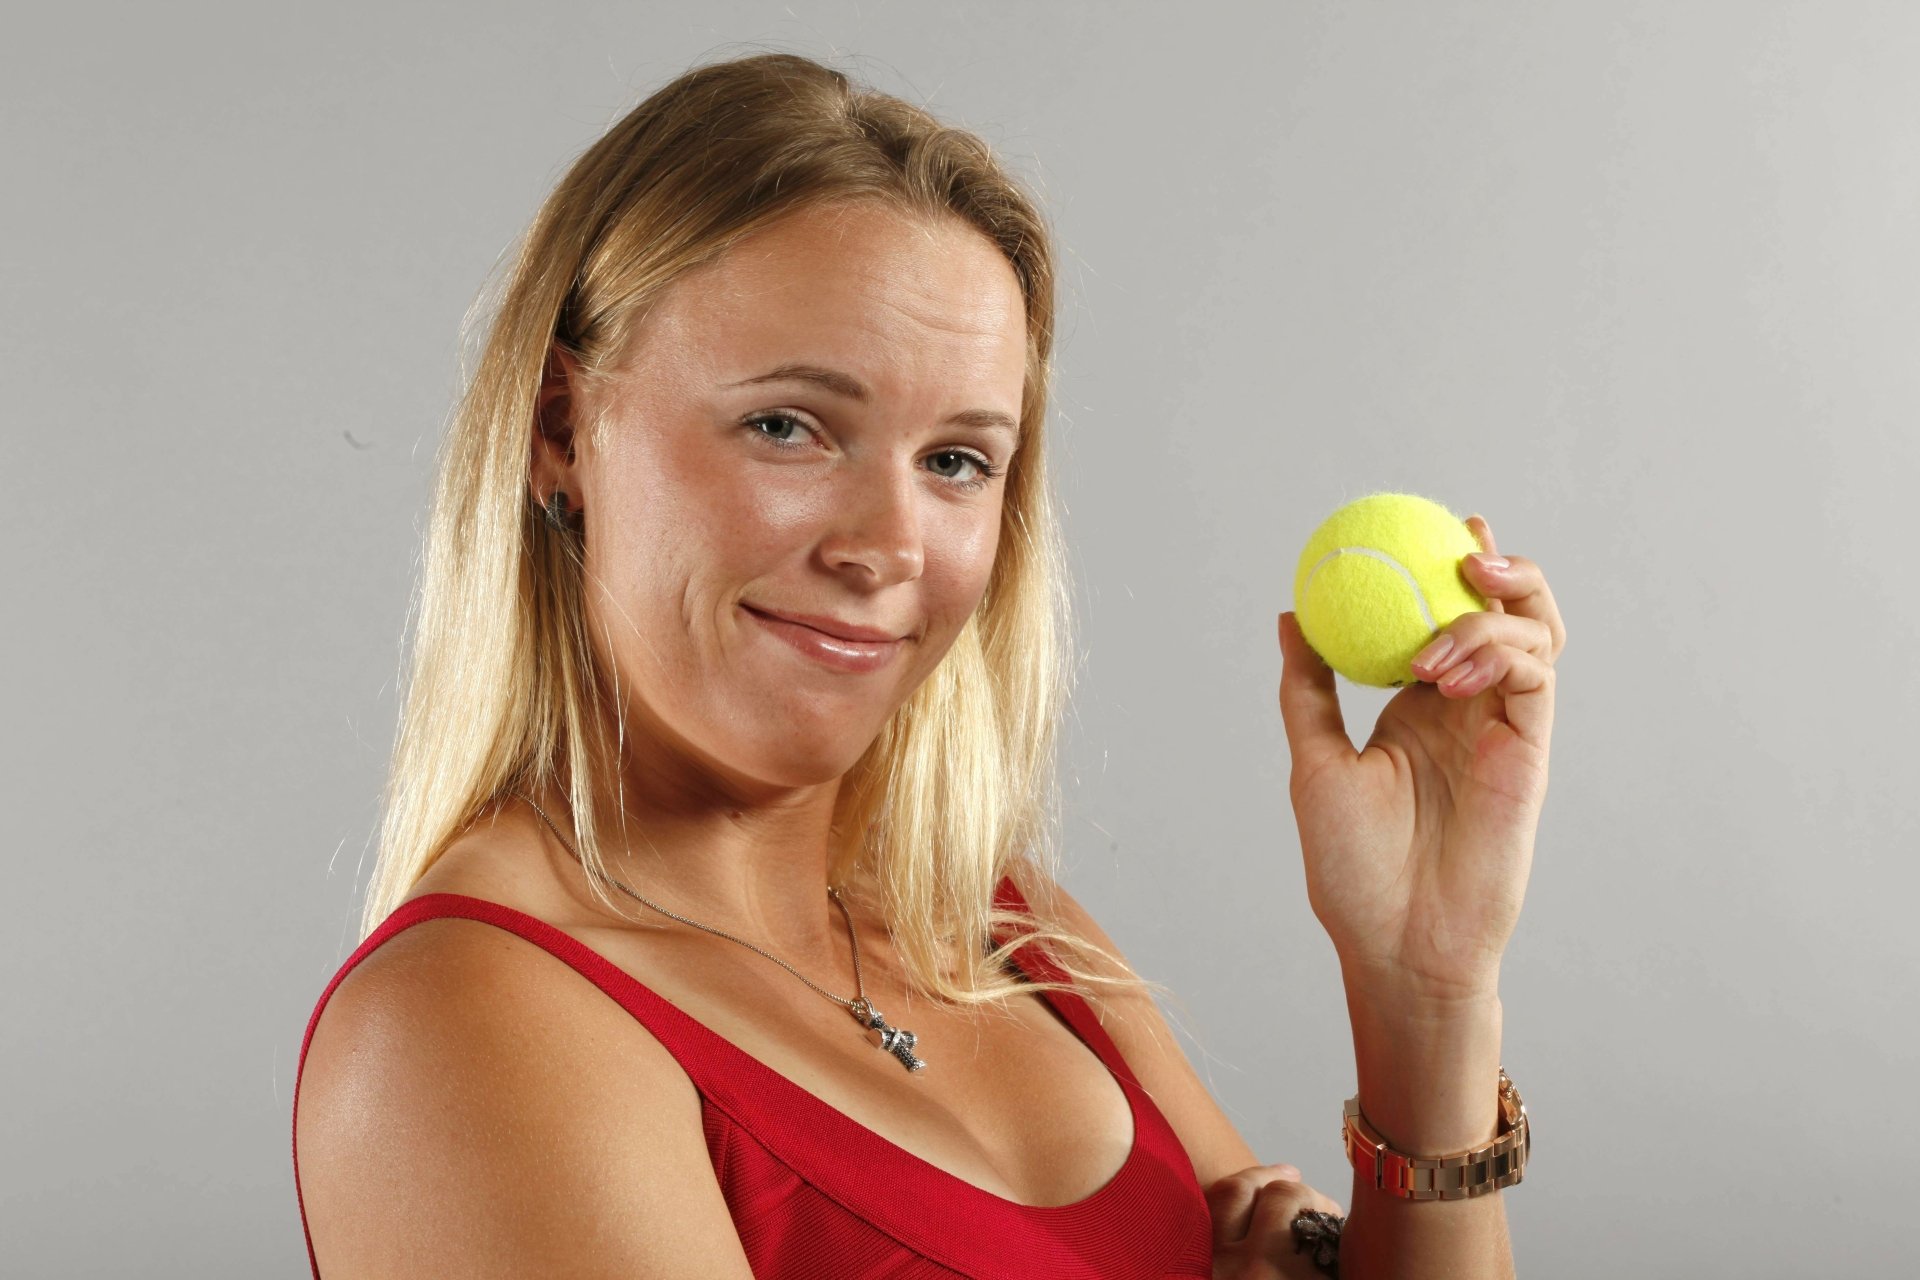 Голая молодая теннисистка позирует с мячиками в старом гараже 